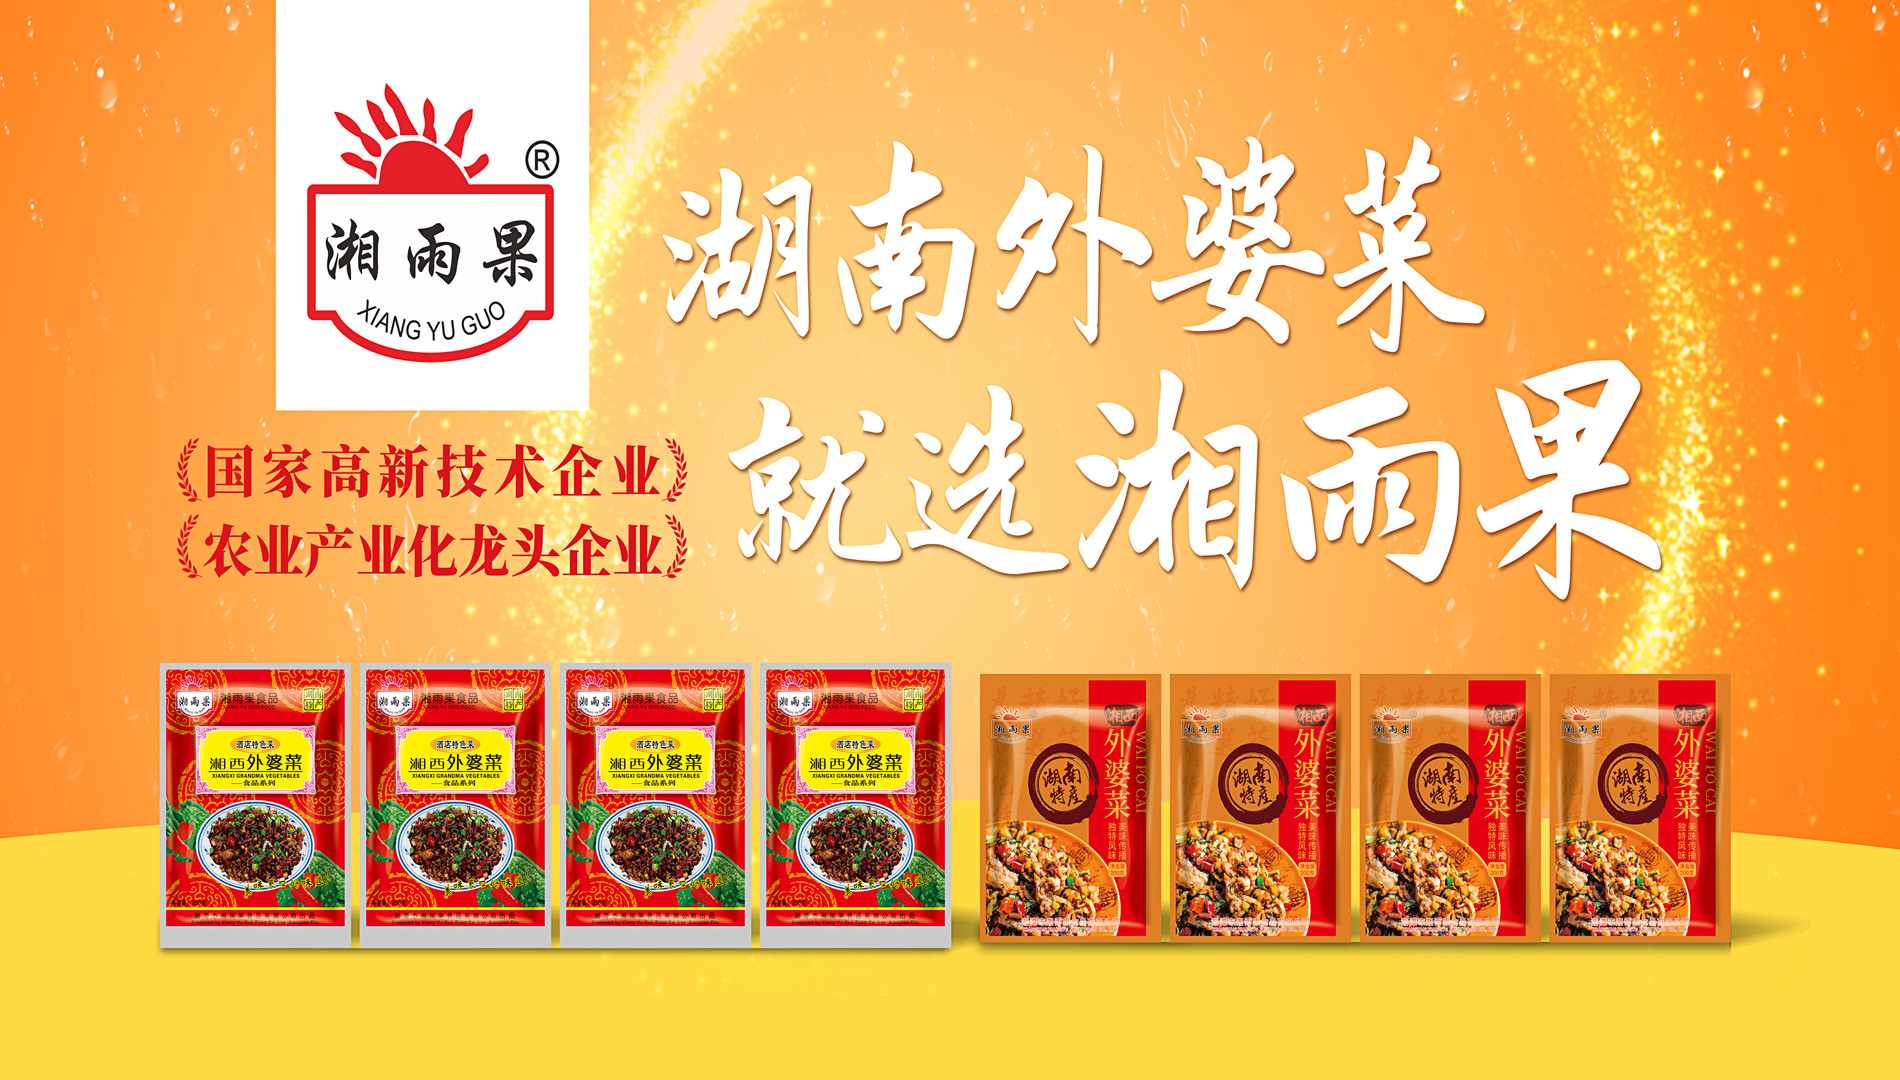 Xiang Yu Guo Food—эталоннае прадпрыемства прамысловасці гатовых страў